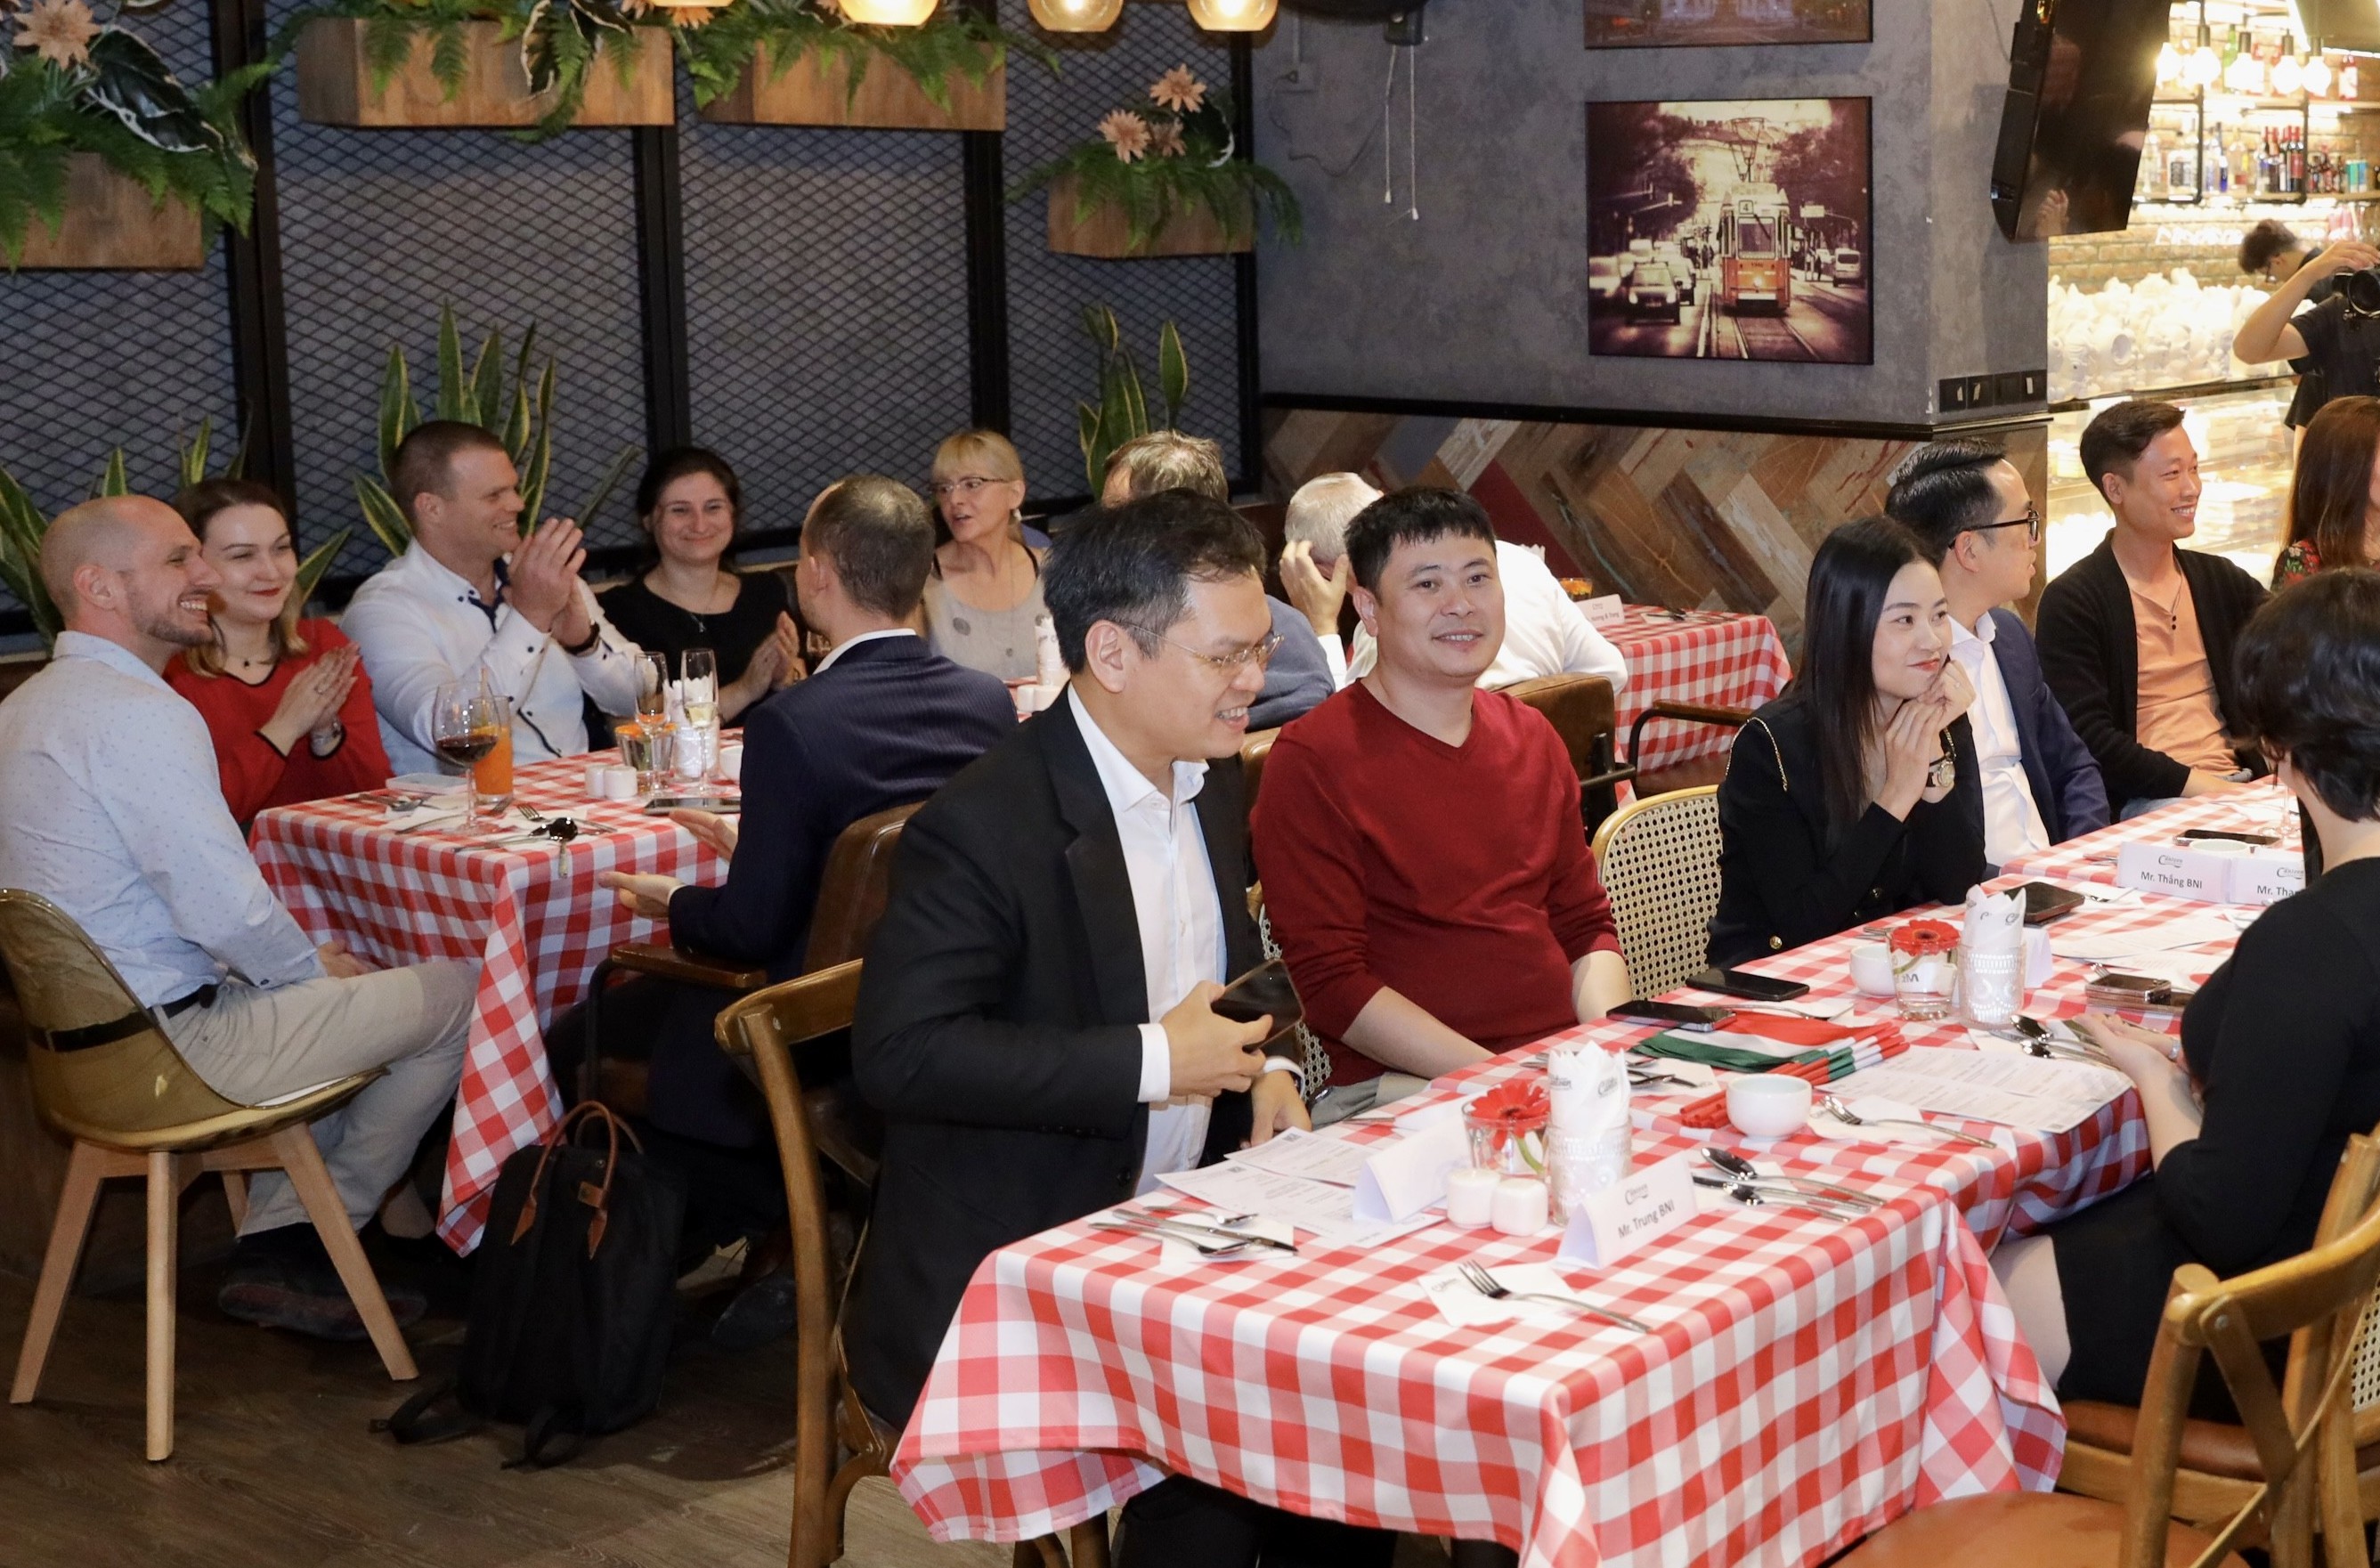 Ra mắt không gian ẩm thực Hungary đầu tiên tại Hà Nội